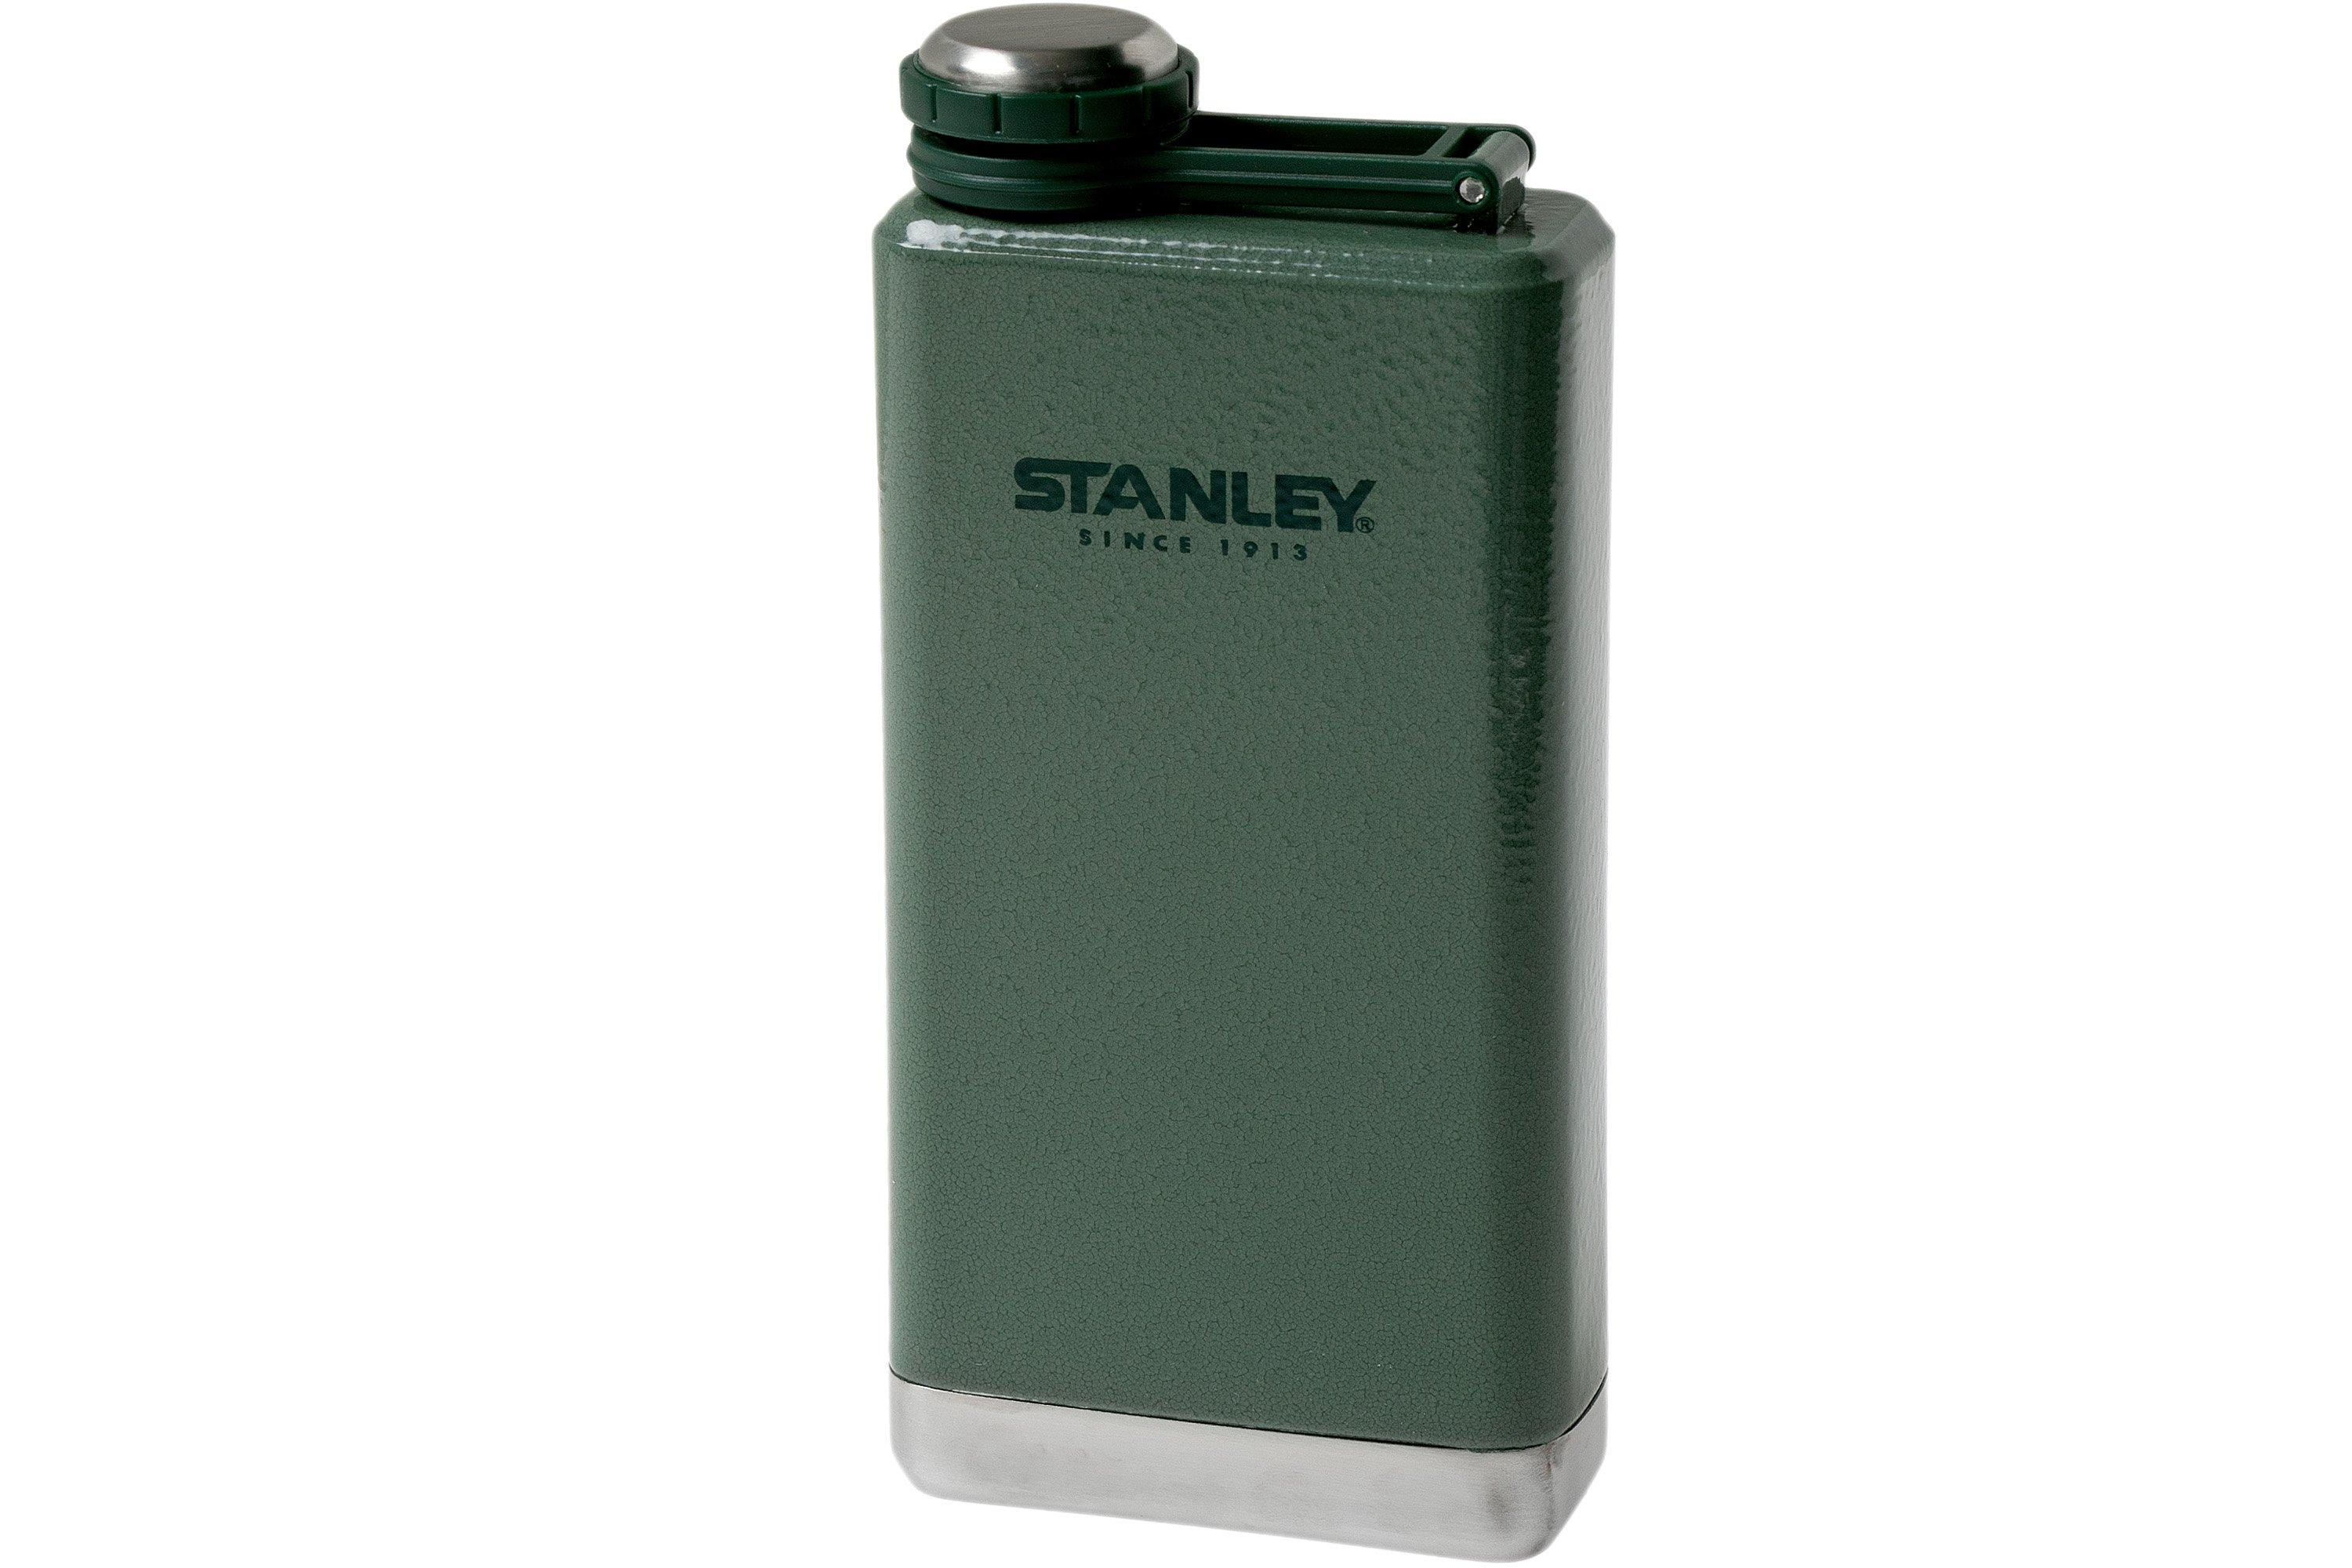 Stanley Adventure Stainless Steel Flask 8 oz / 236 mL Leak Proof